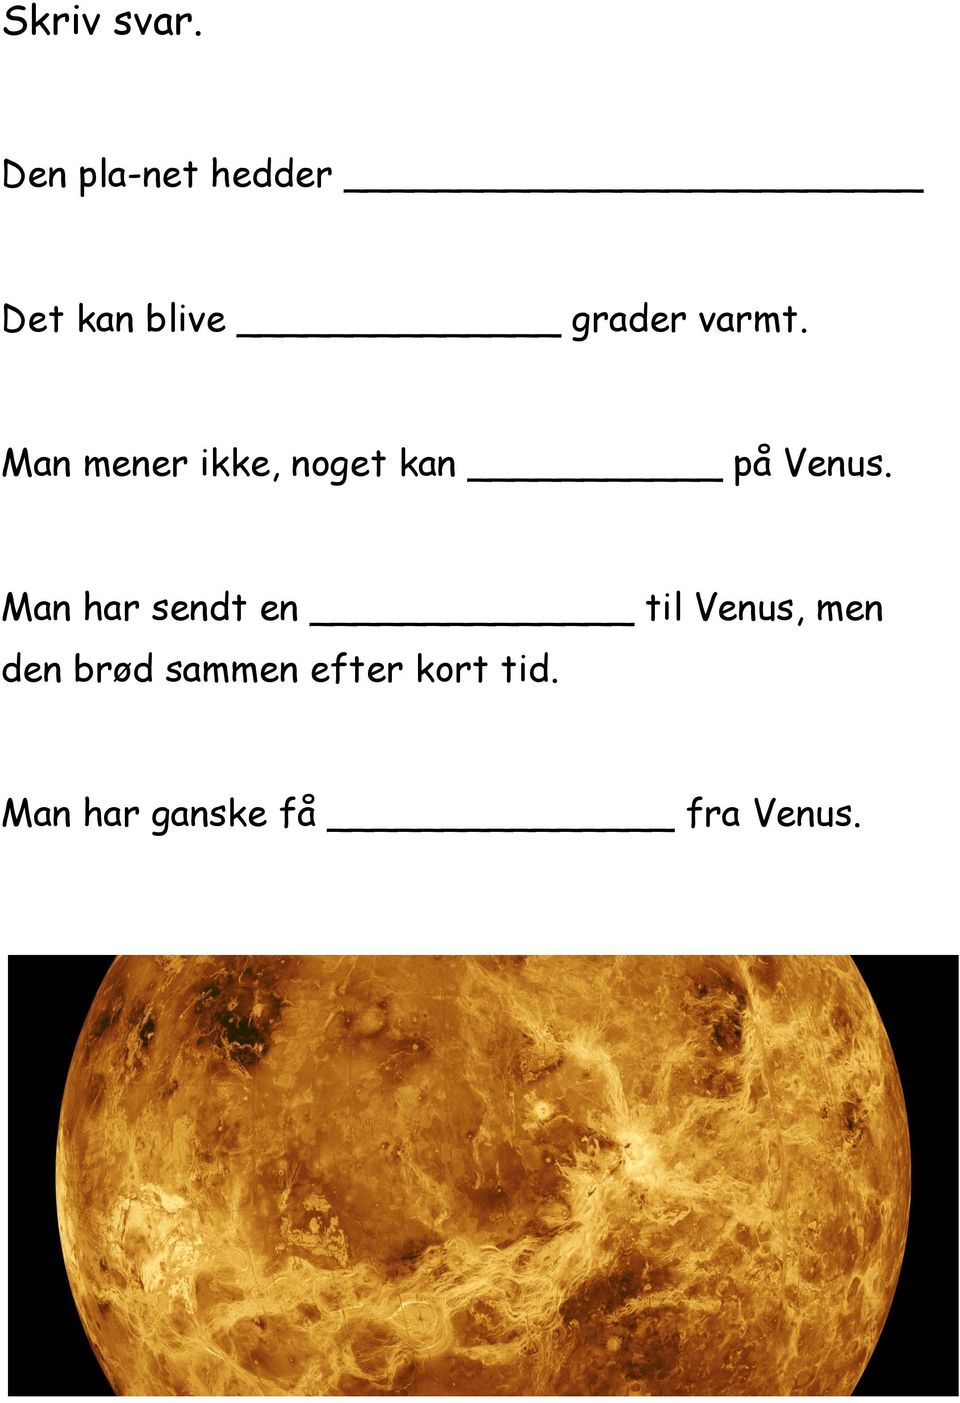 Man mener ikke, noget kan på Venus.